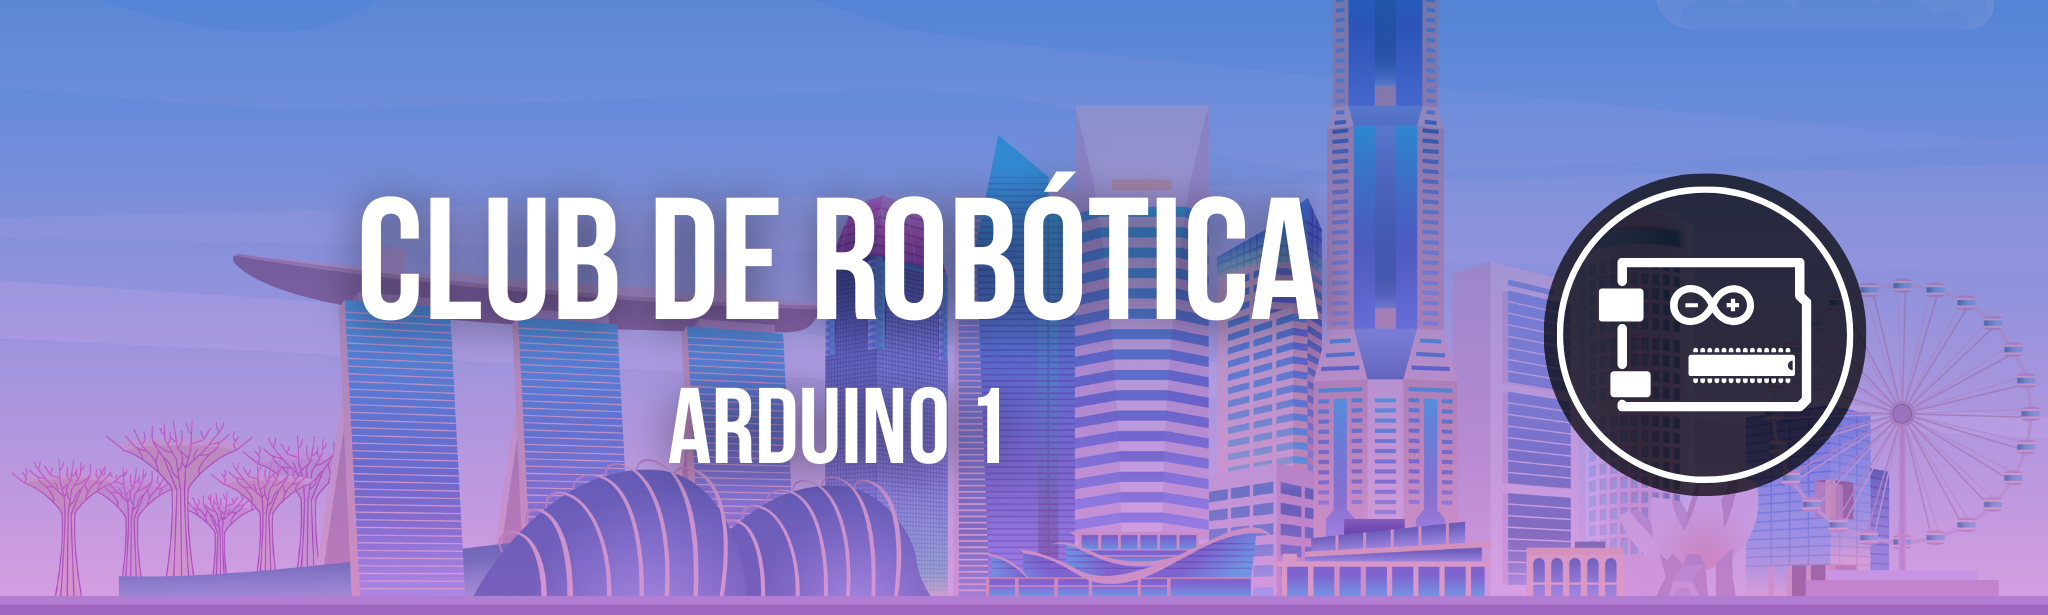 Club de Robótica para chicas - Arduino (11)